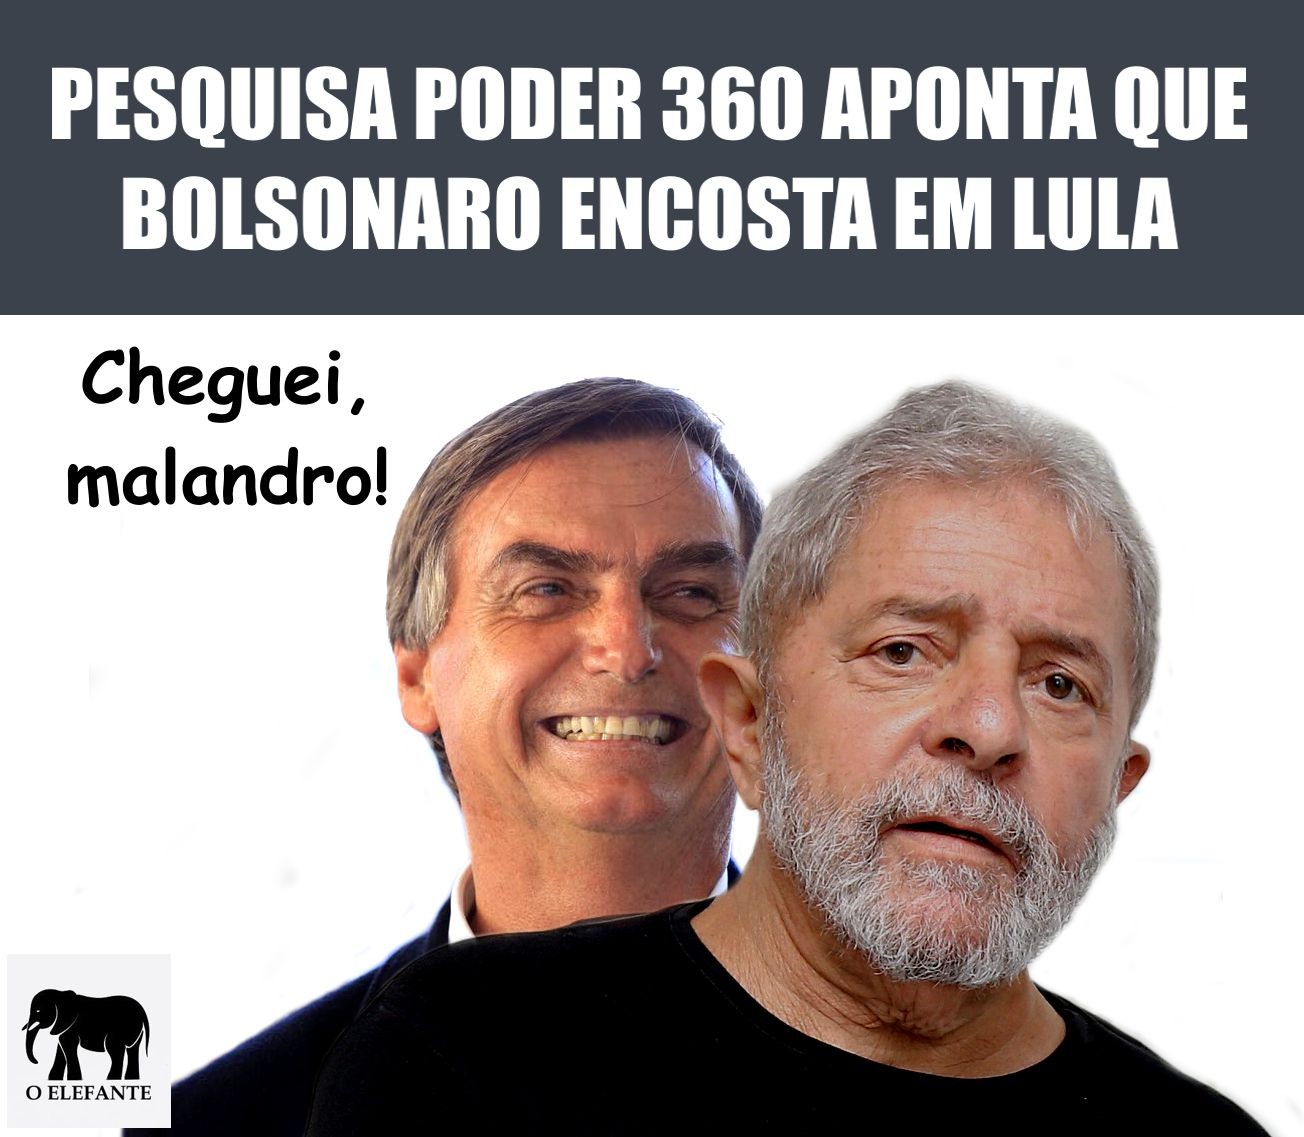 Mercado já vê em Bolsonaro opção contra Lula em 2018